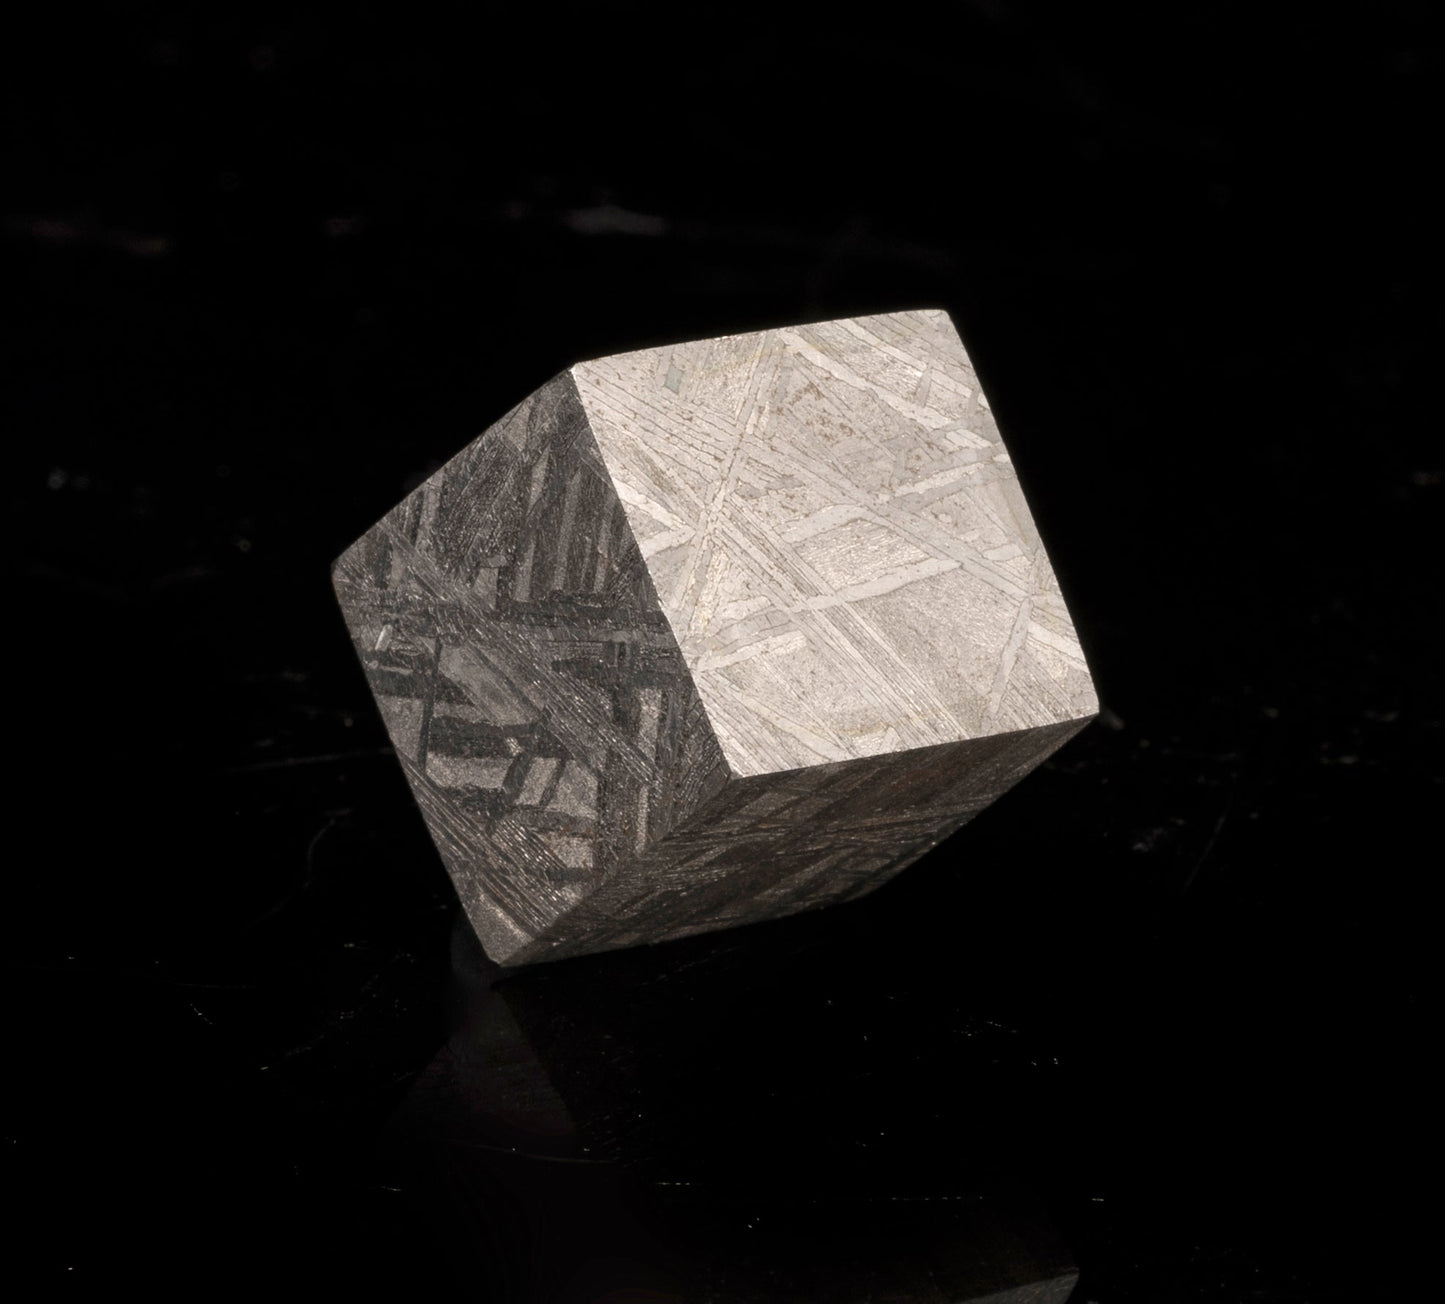 Muonionalusta Meteorite Cube // 32.71 Grams